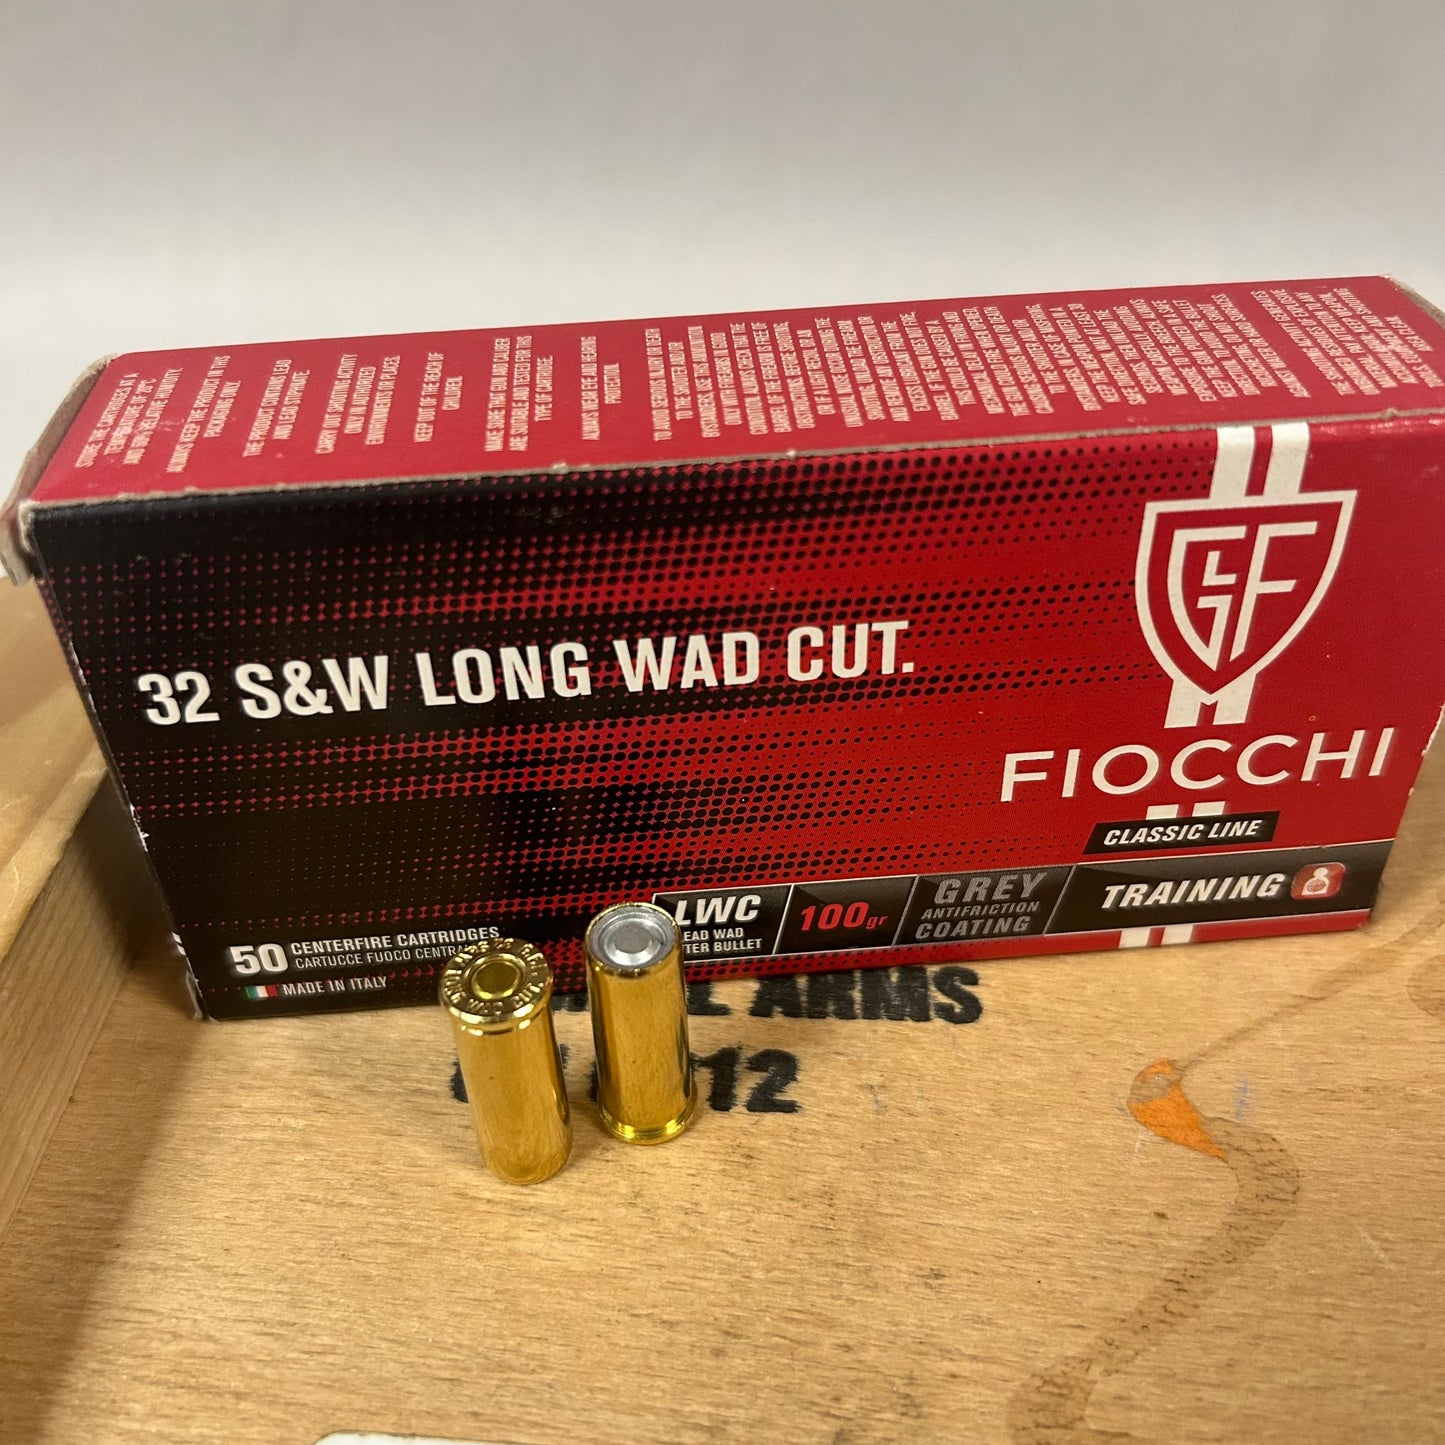 50 Count Box Fiocchi 32 S&W Long Wad Cut 100 gr. - FI32LWC